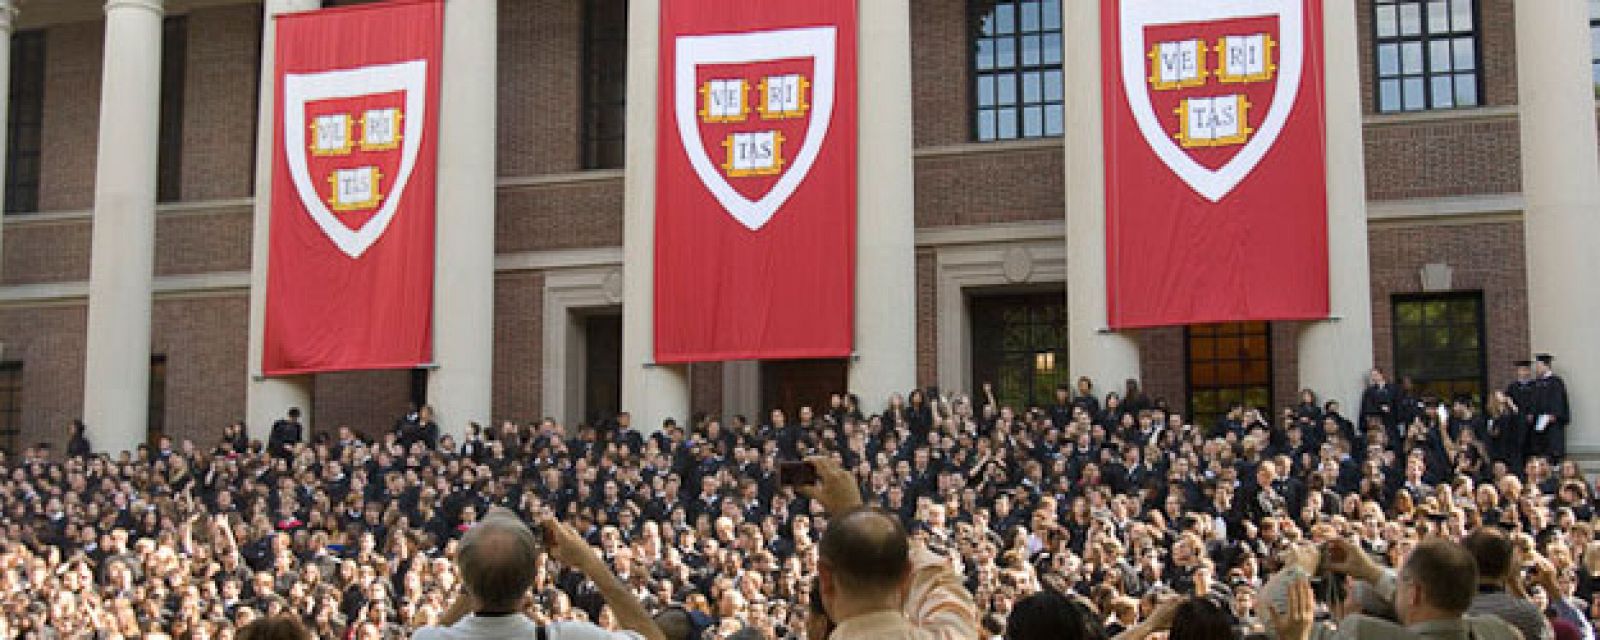 Celebración de una graduación de alumnos de la Universidad de Harvard